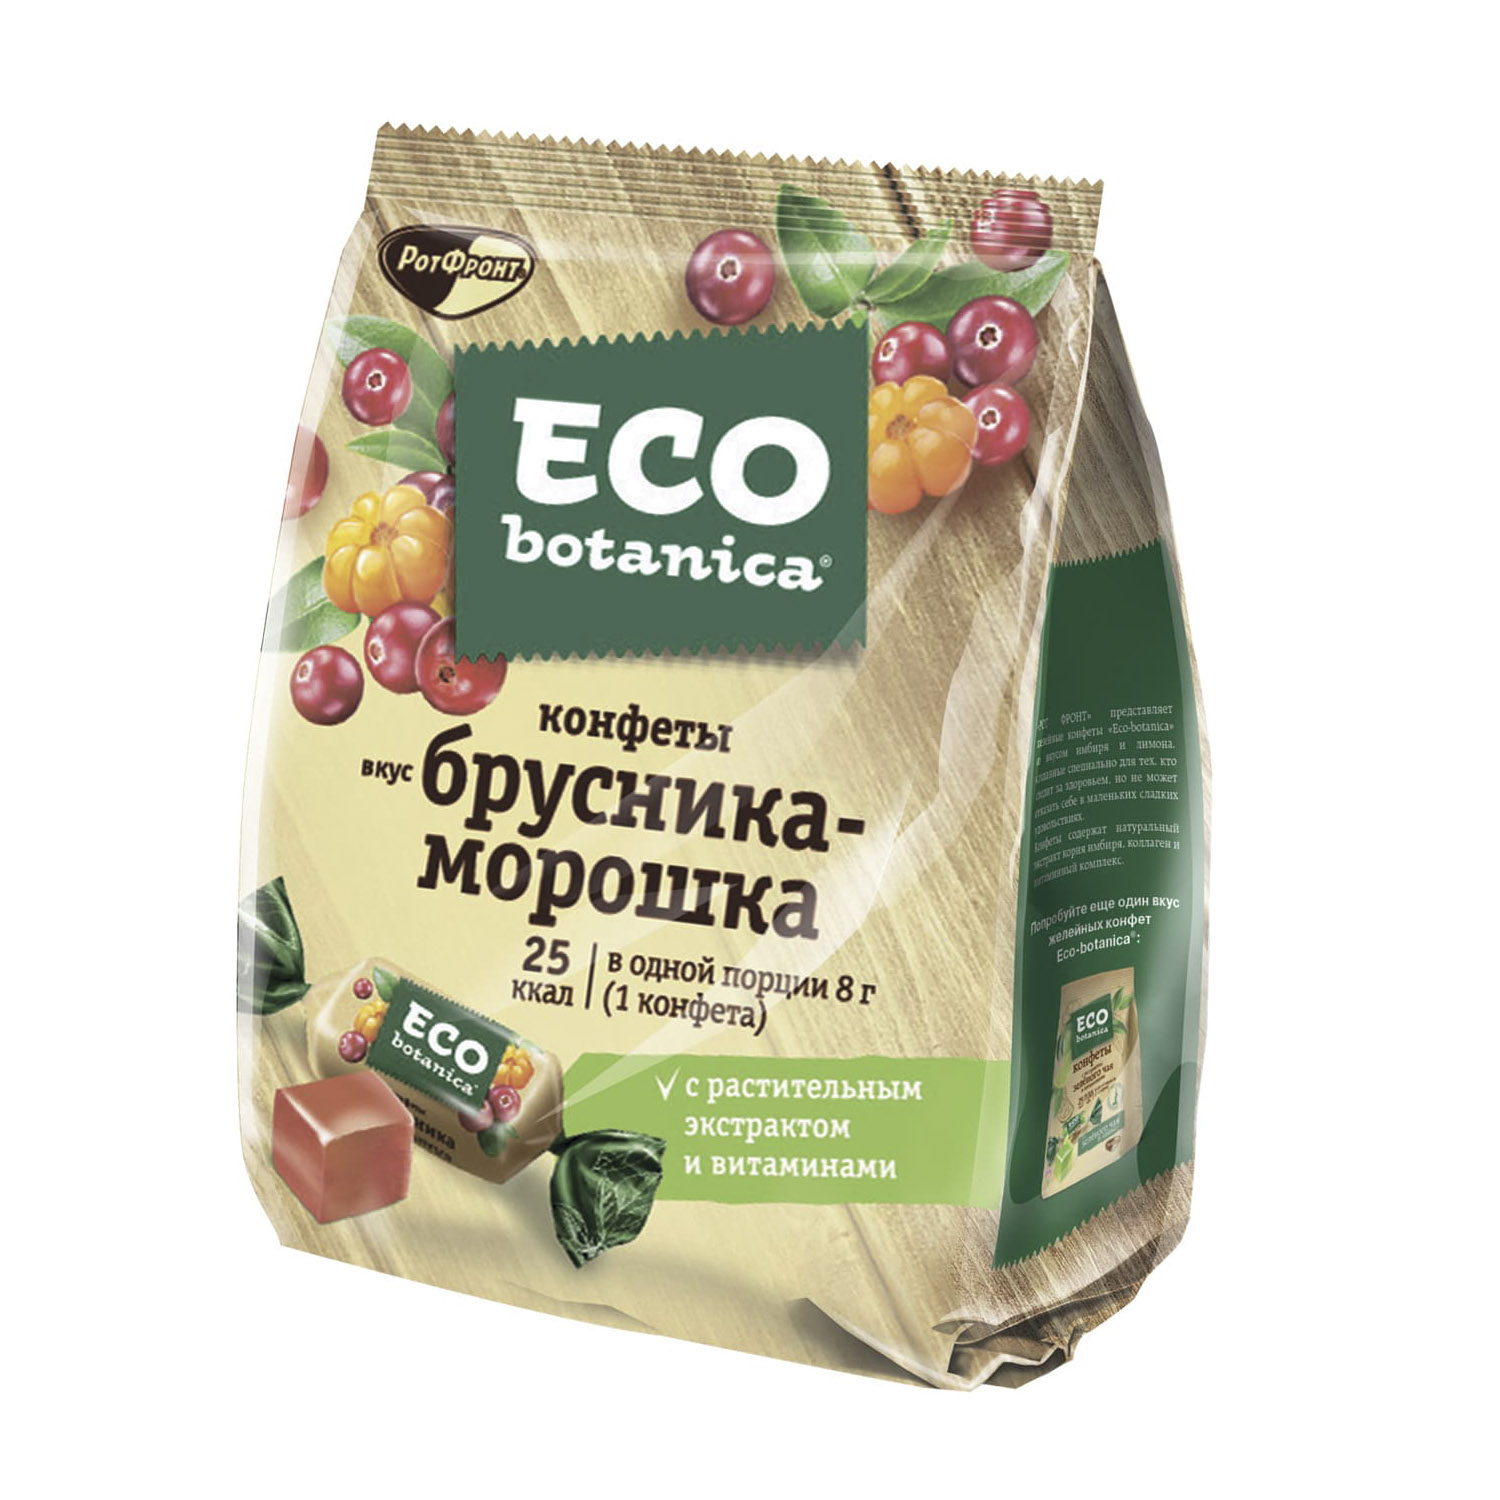 Конфеты Eco Botanica со вкусом Брусника-Морошка 200 г конфеты eco botanica 200г вкус брусника морошка ротфронт